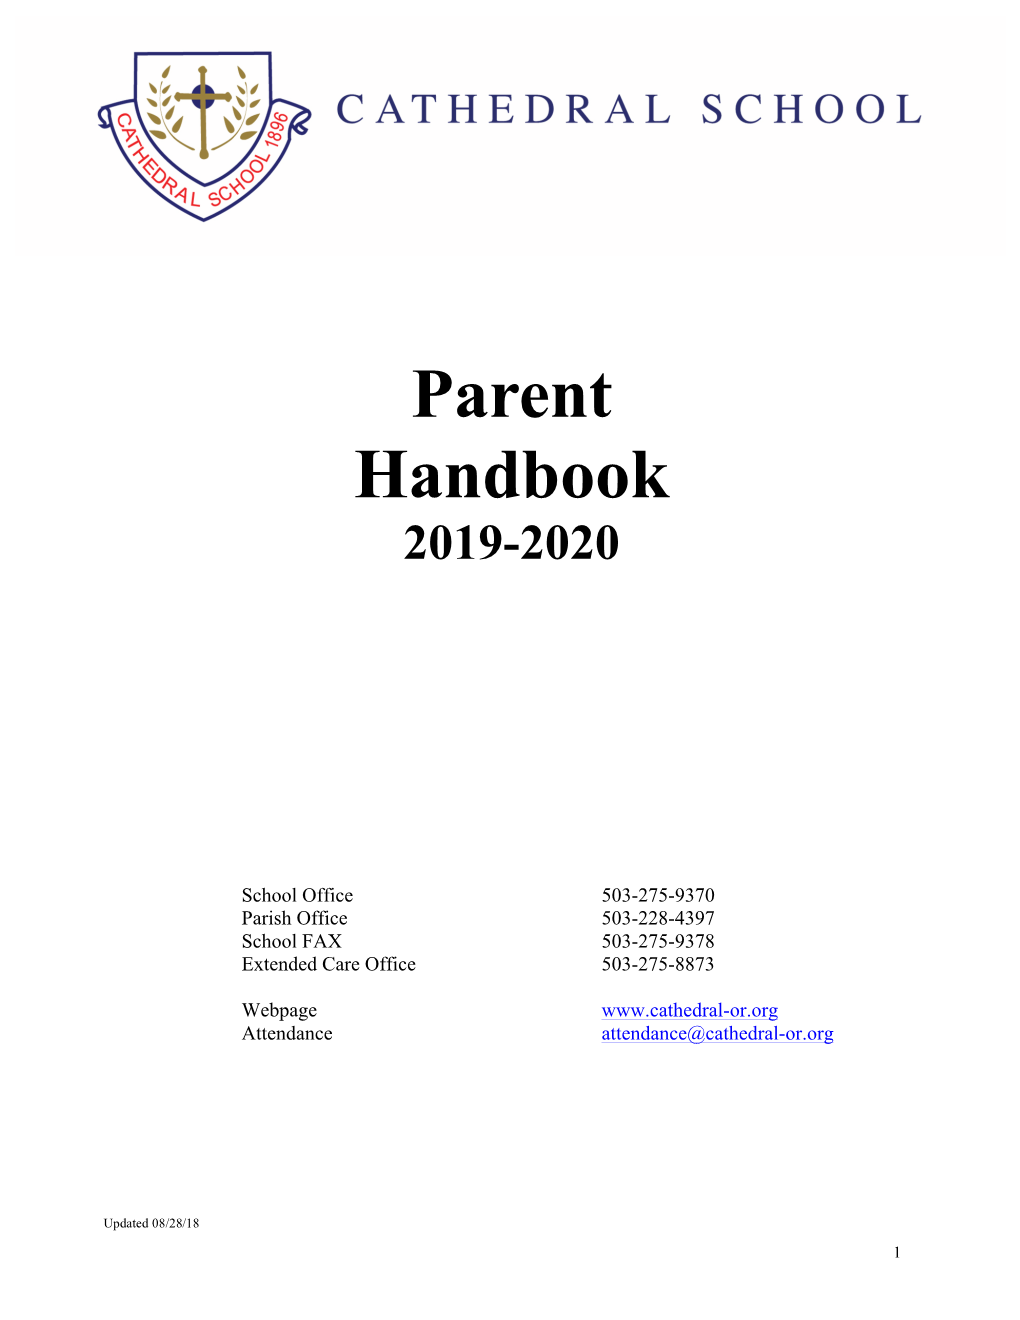 Parent Handbook 2019-2020